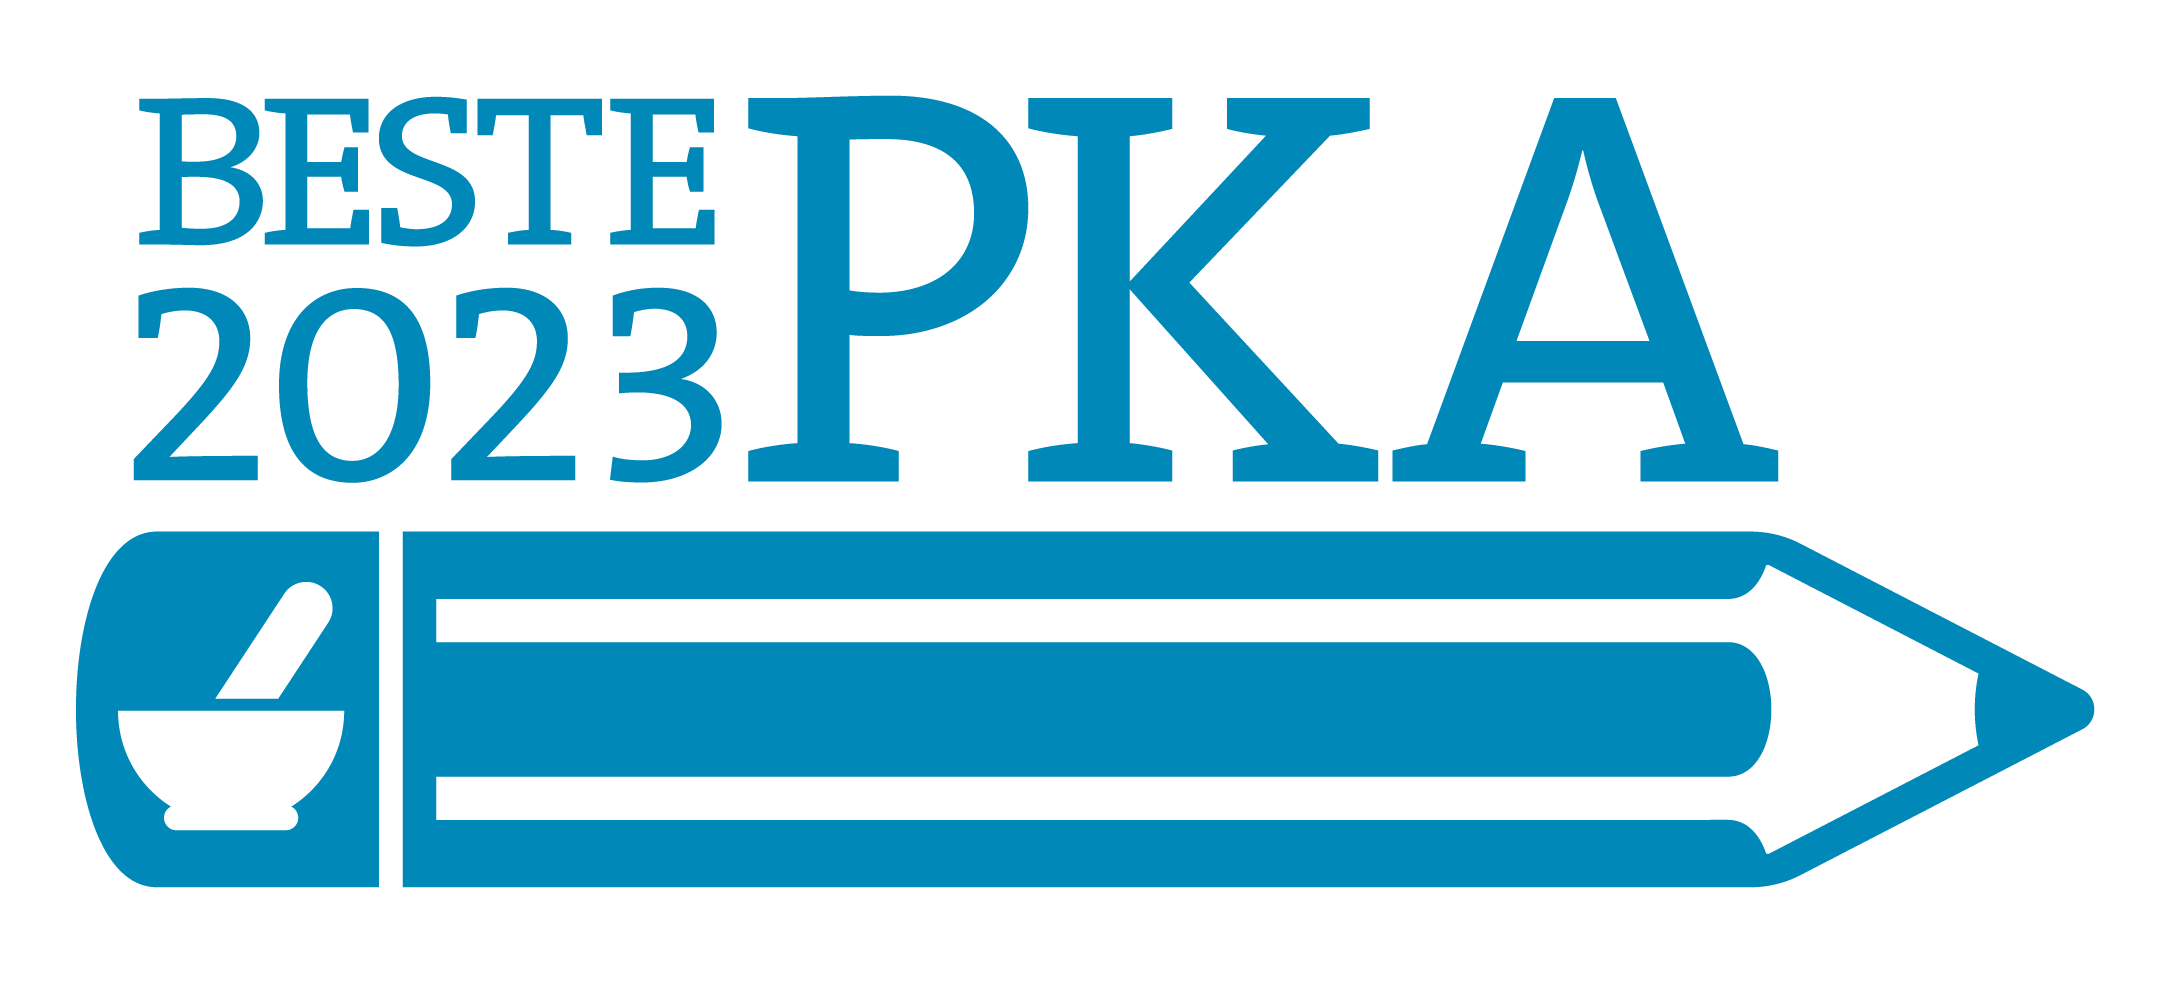 beste pka - logo - light blue